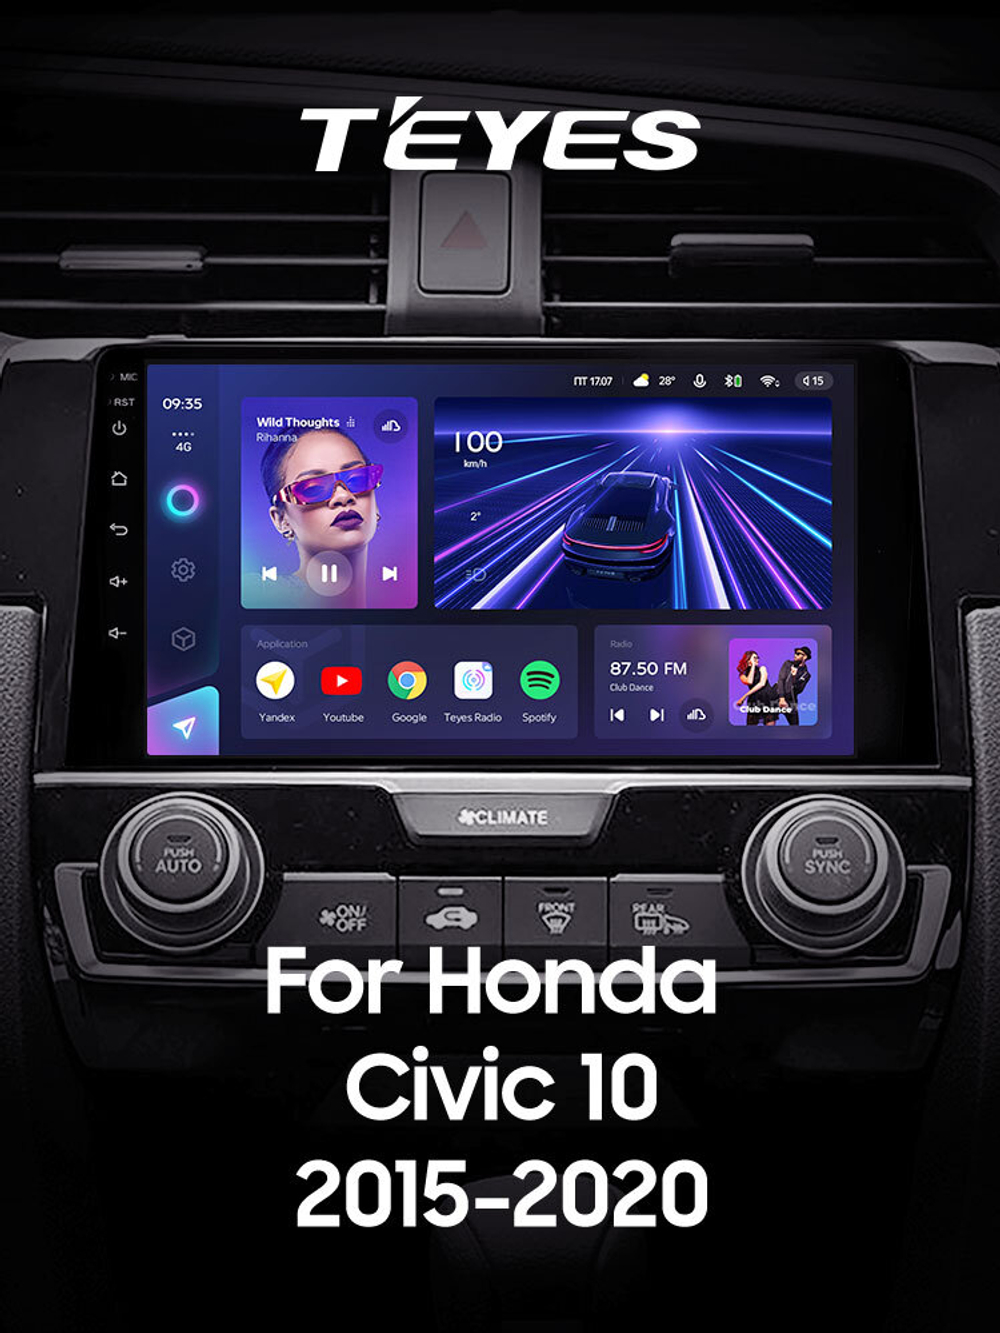 Teyes CC3 9" для Honda Civic 10 2015-2020